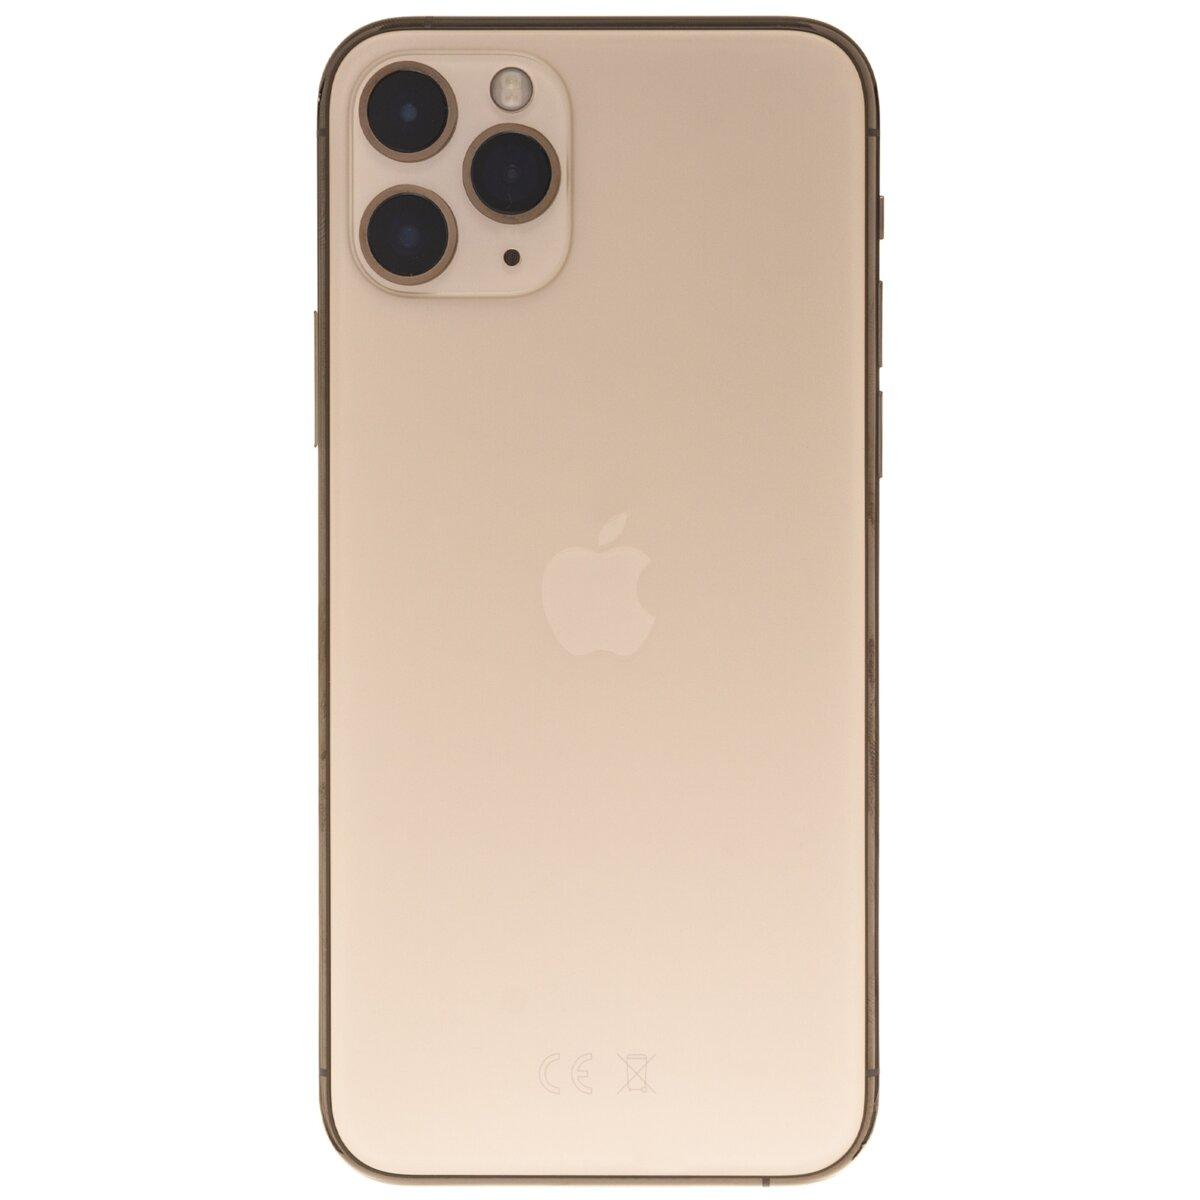 Apple Iphone 11 Pro 256gb Złoty Smartfon Ceny I Opinie W Media Expert